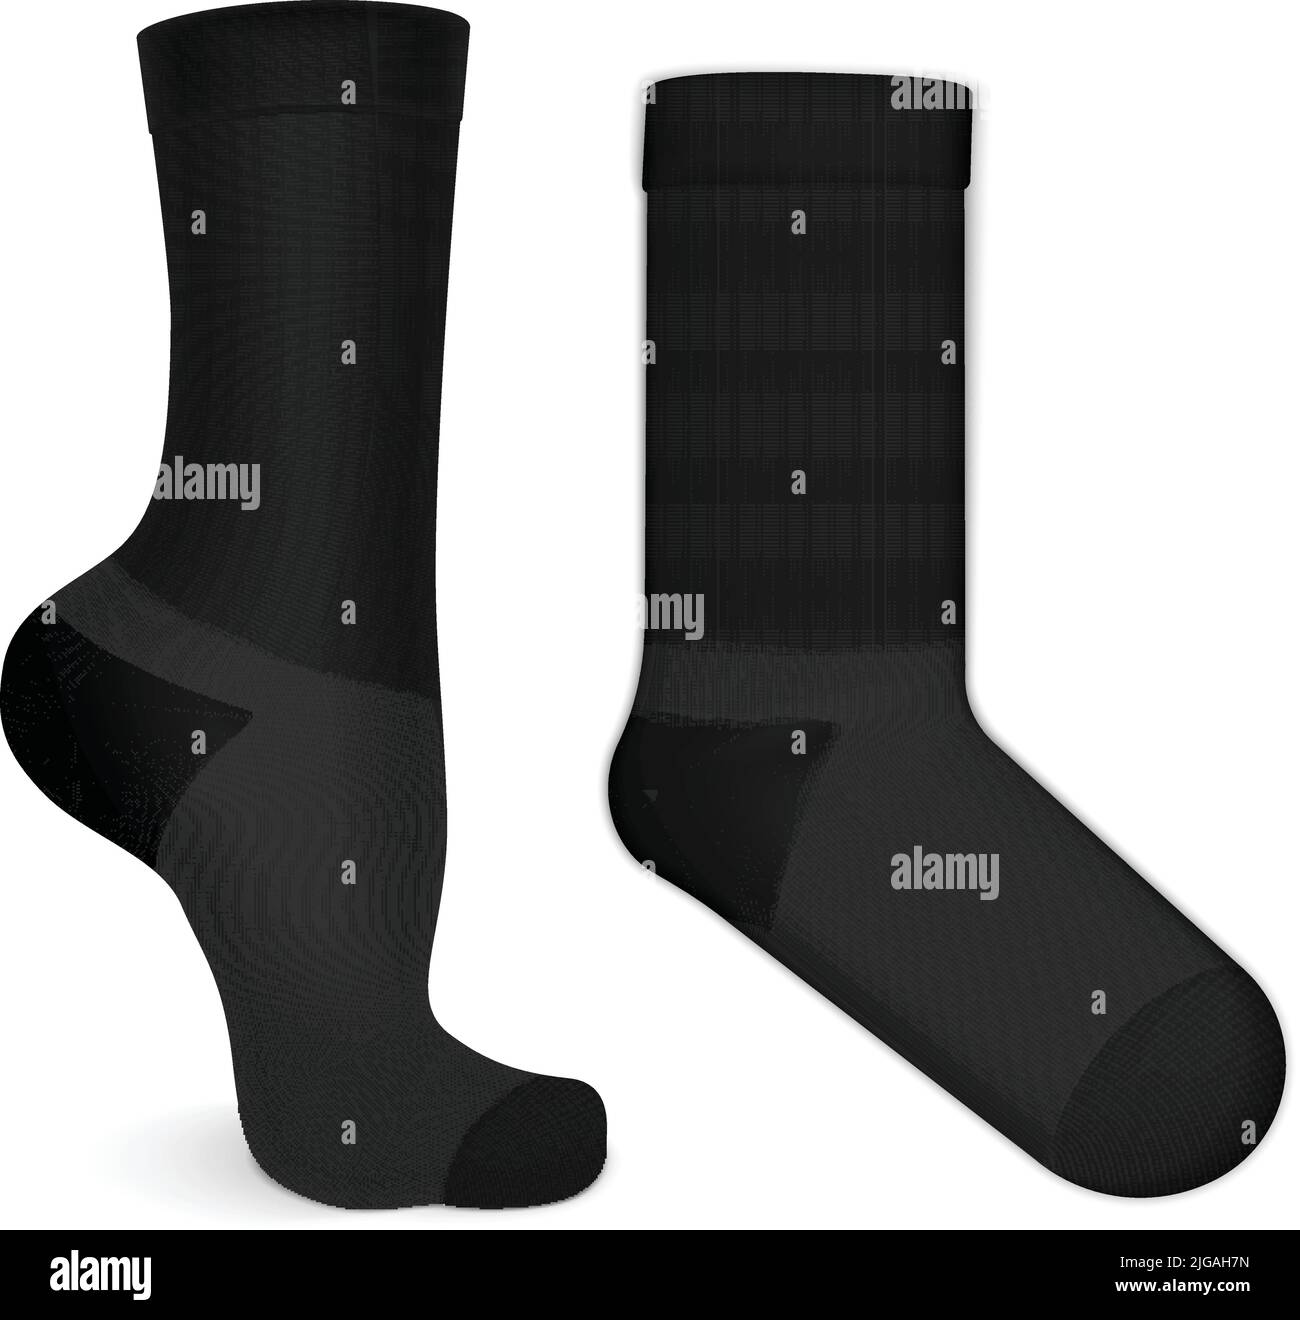 Realistic black mid calf socks pair mockup worn on leg isolated on ...